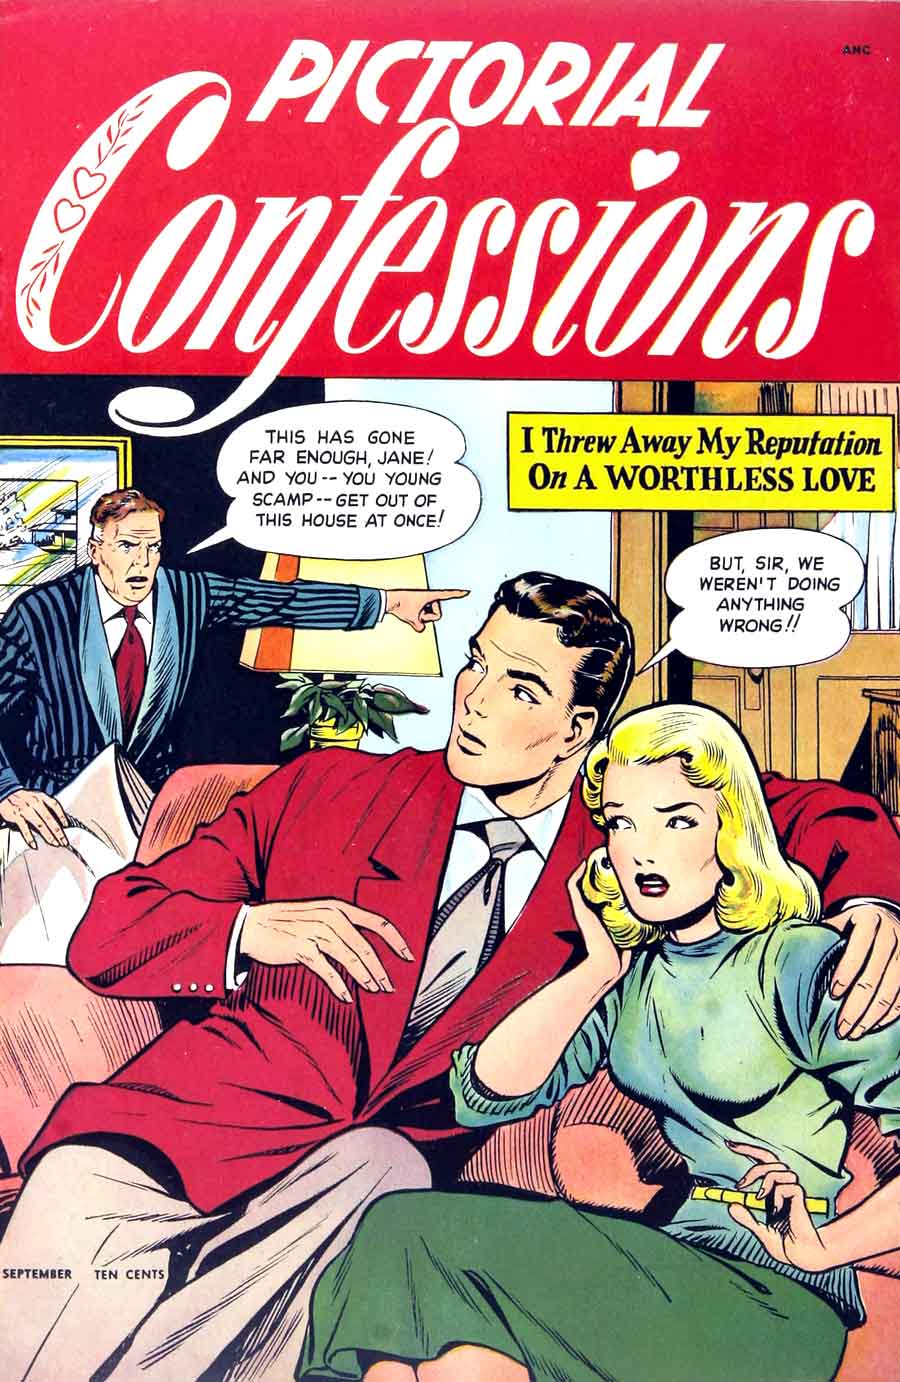 Matt Baker comic book cover art, 1940s st. john golden age romance, Pictorial Confessions v1 #1